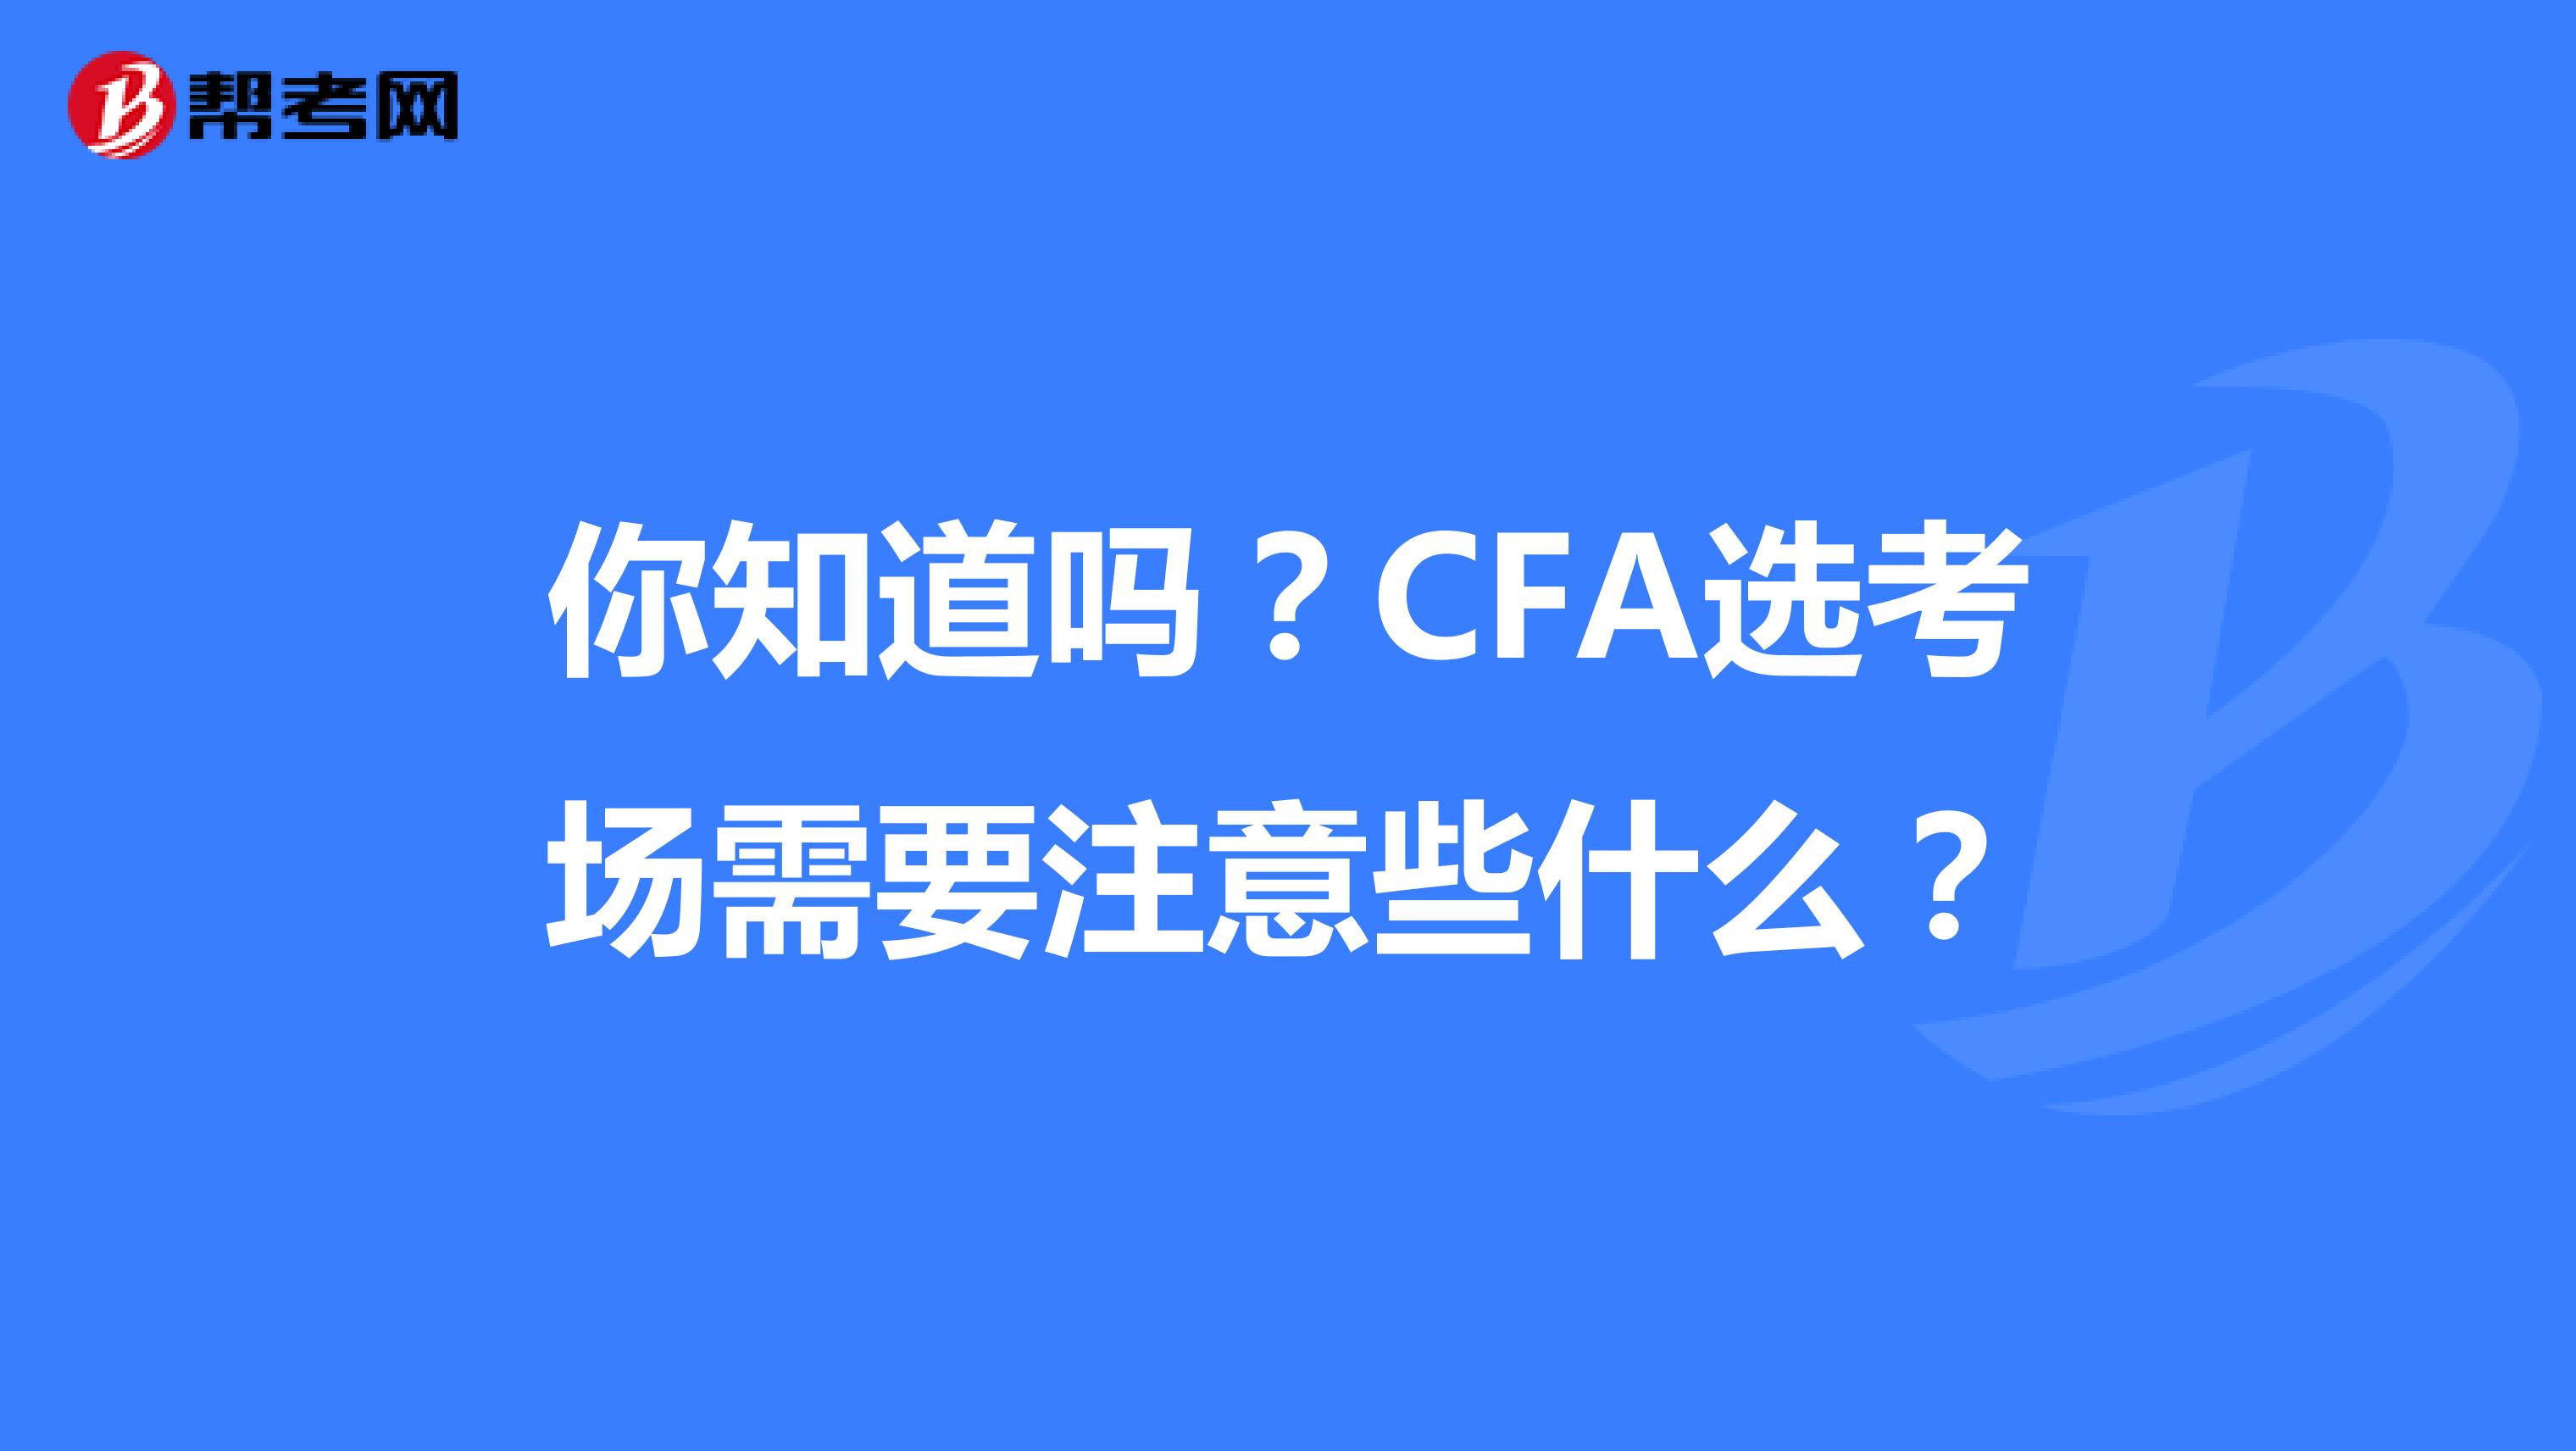 你知道嗎？CFA選考場需要注意些什么？